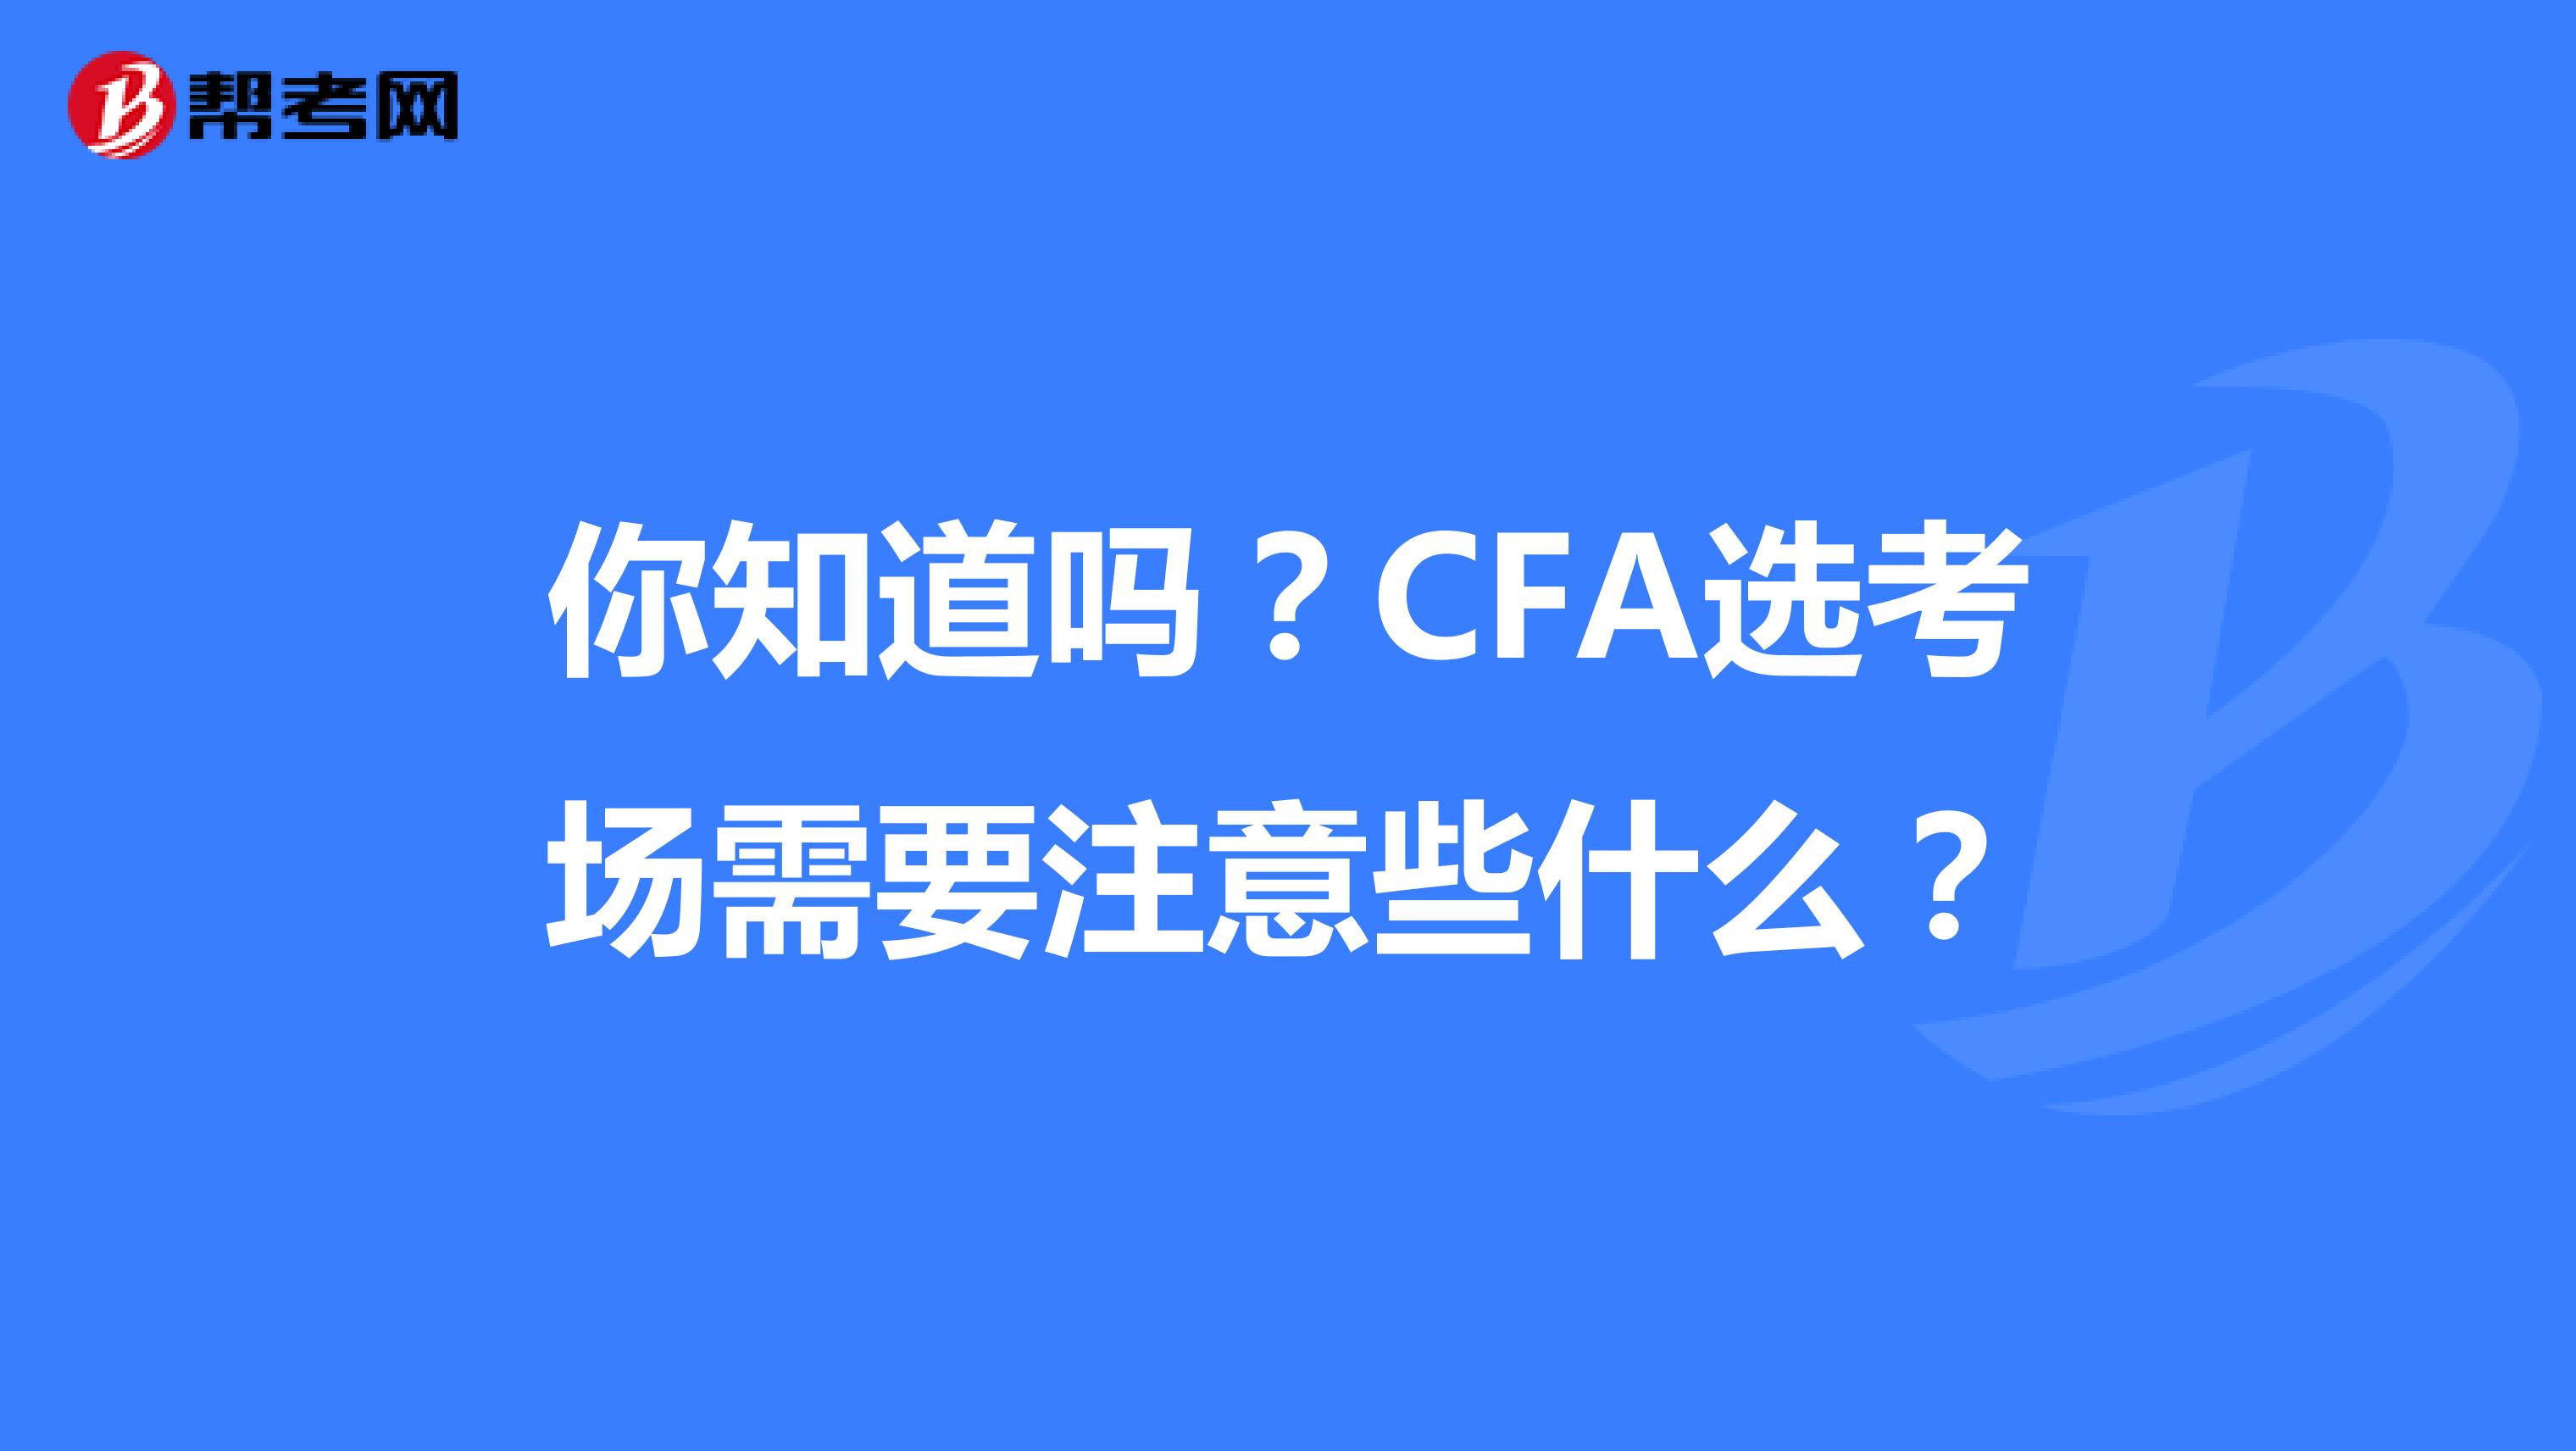 你知道嗎？CFA選考場需要注意些什么？